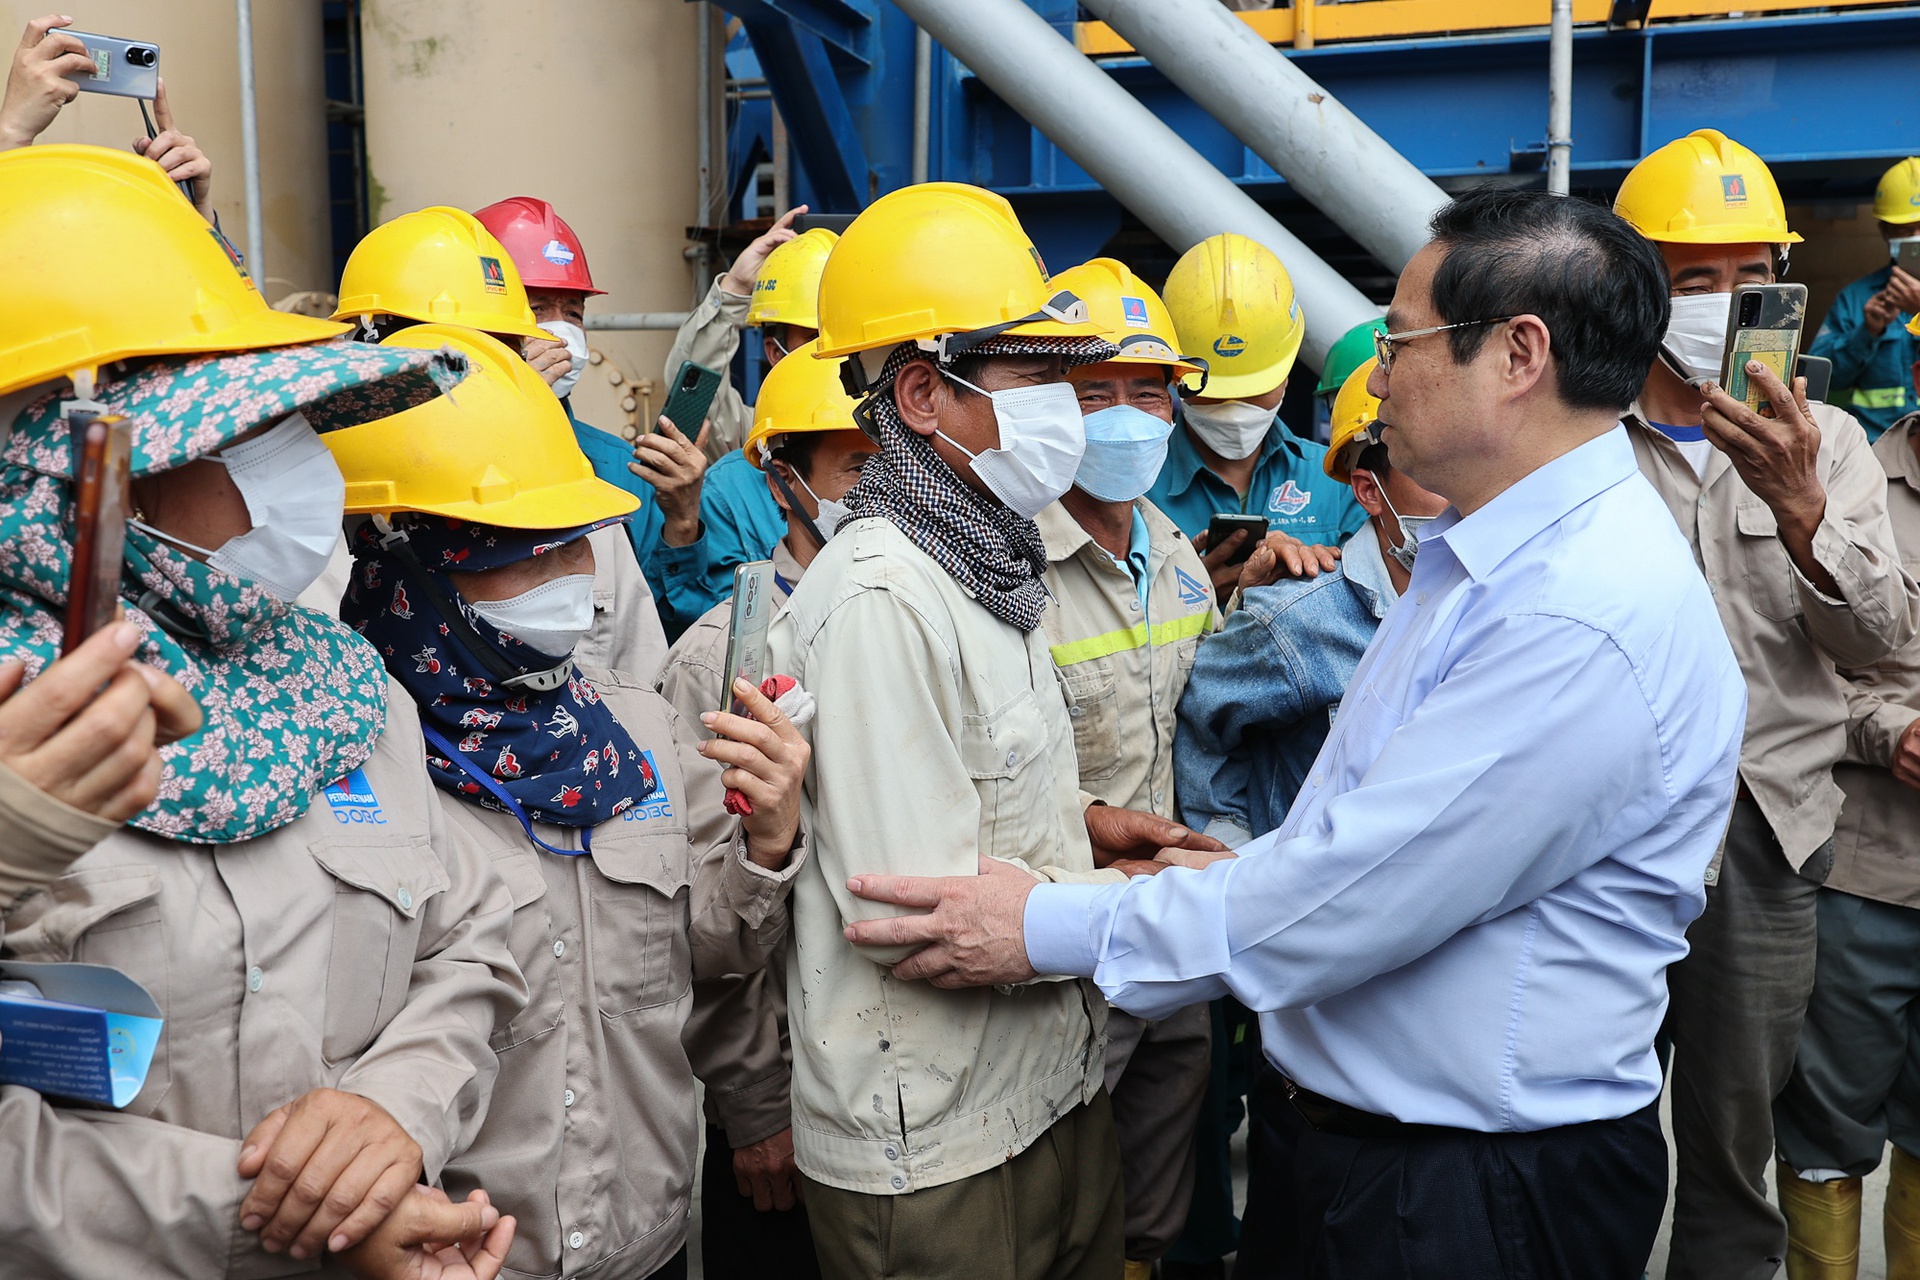 Thủ tướng Phạm Minh Chính và đoàn công tác tới kiểm tra, làm việc tại dự án Nhiệt điện Thái Bình 2 vào đầu tháng 5. Ảnh: VGP/Nhật Bắc.